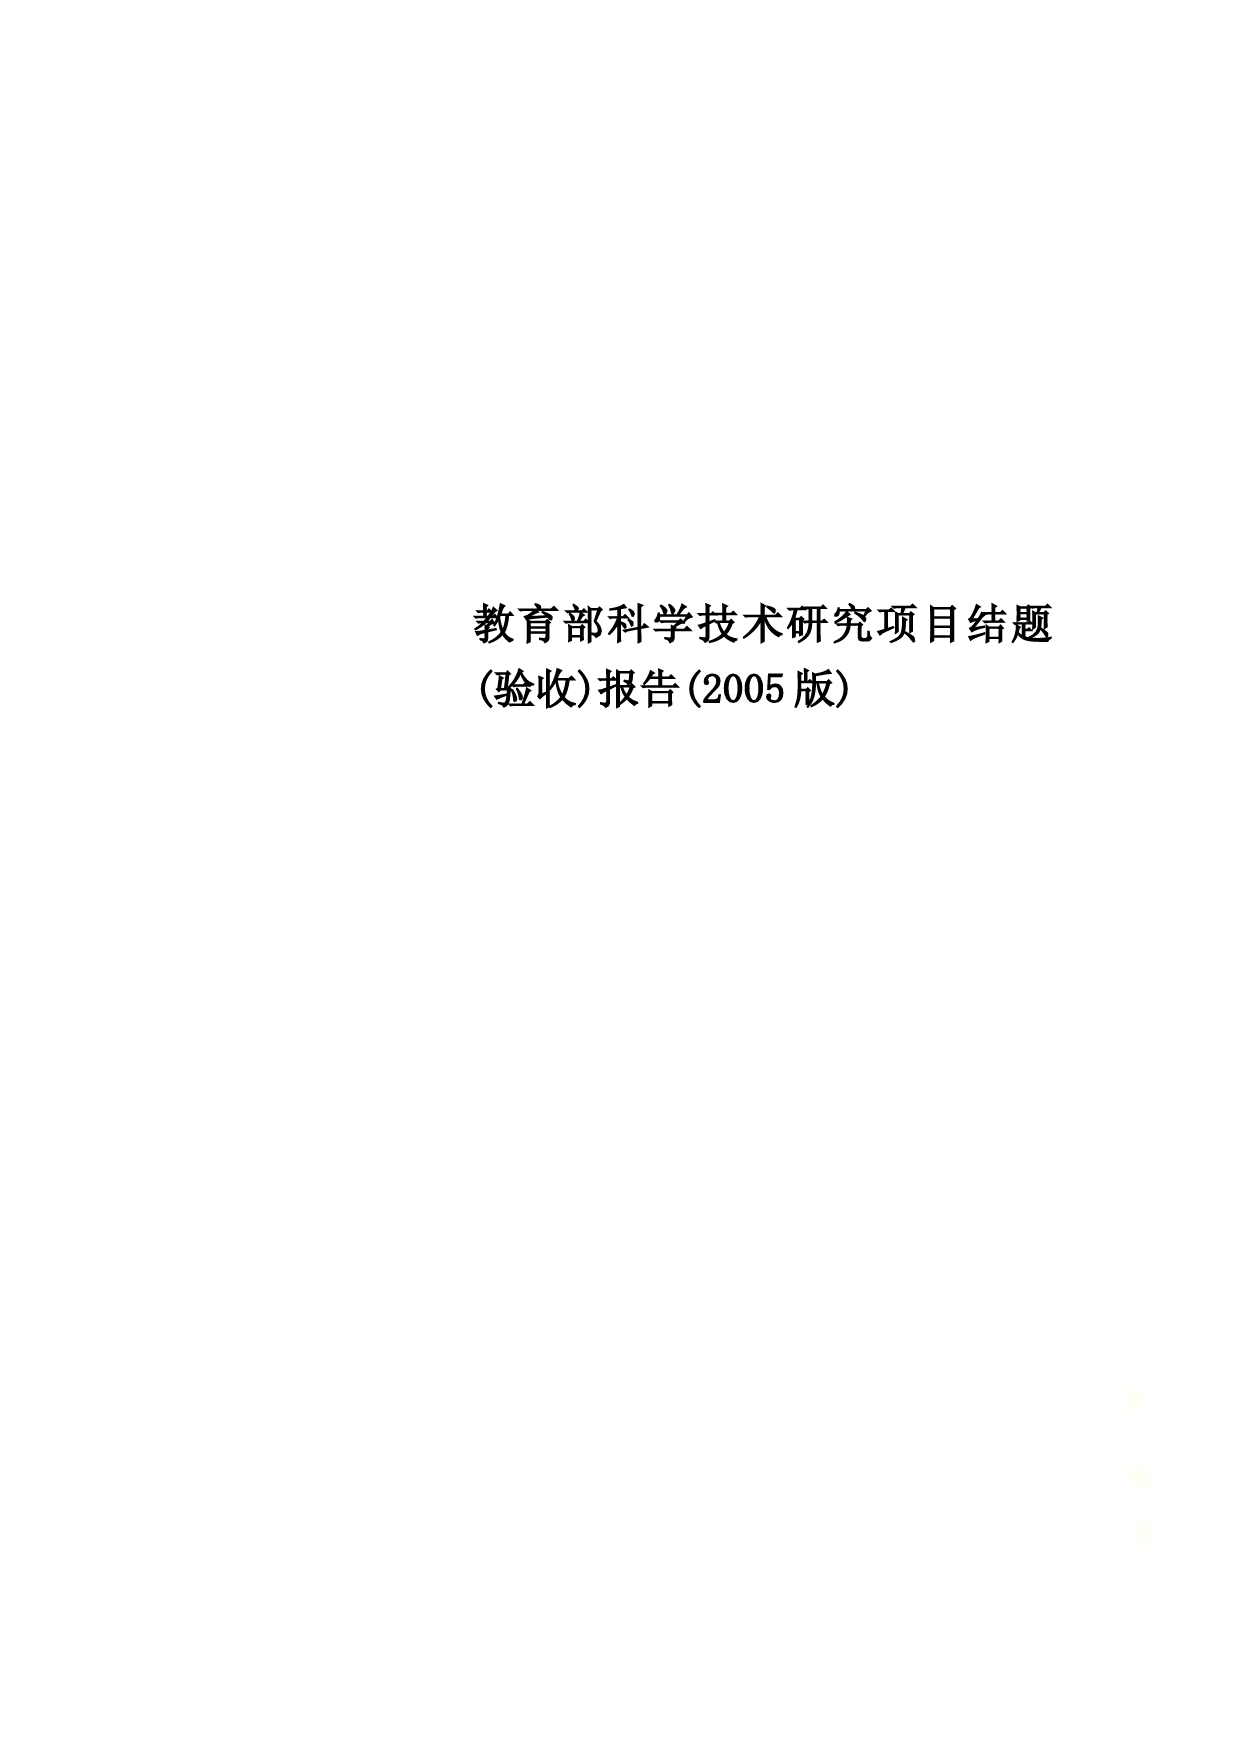 教育部科学技术研究项目结题(验收)报告(2005版)